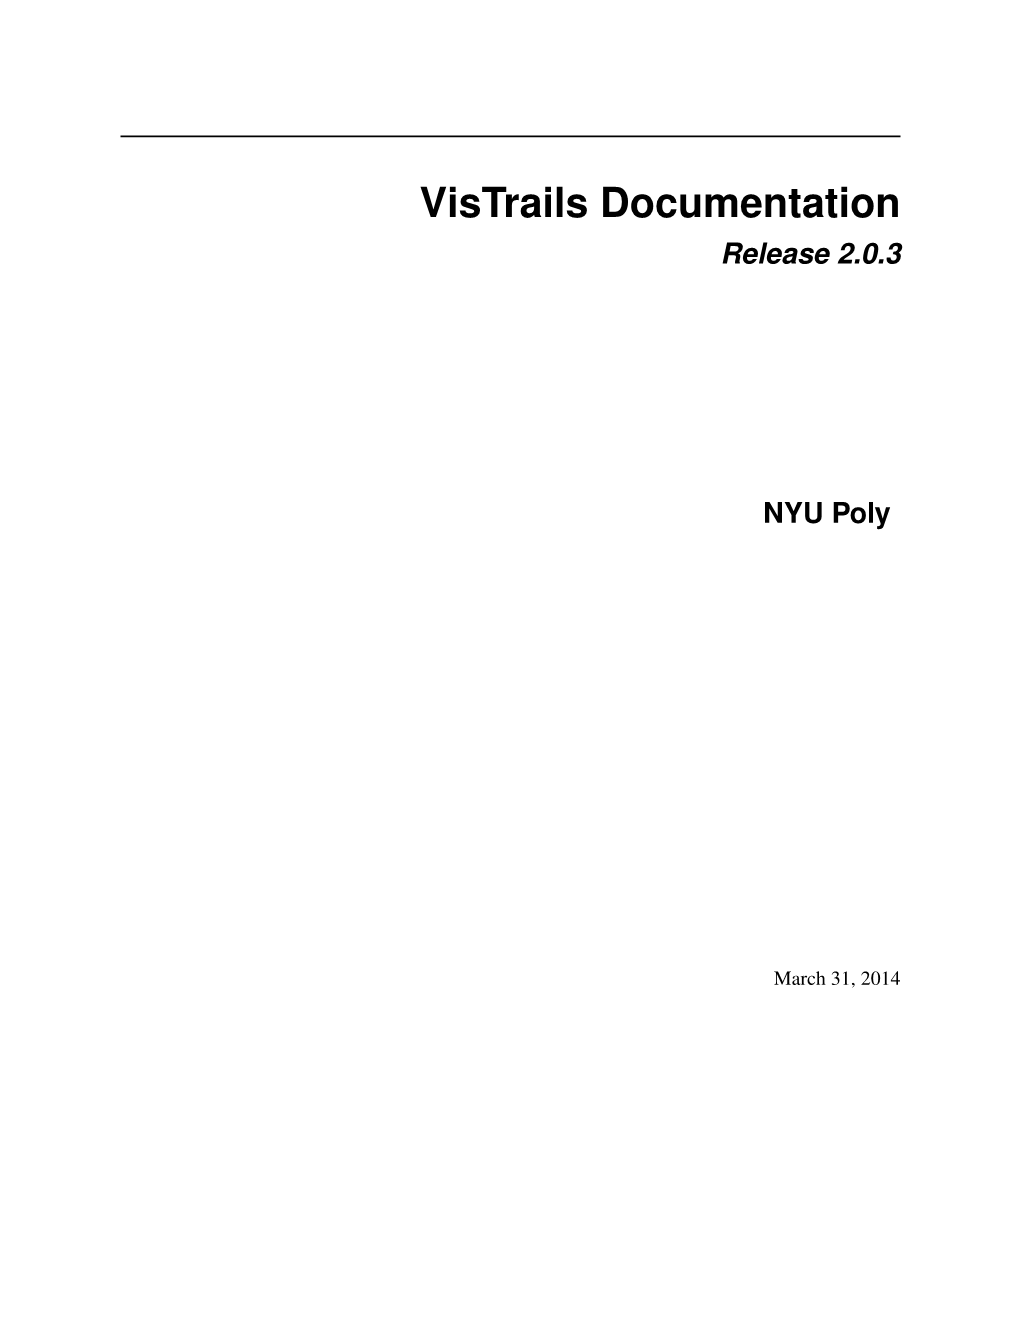 Vistrails Documentation Release 2.0.3